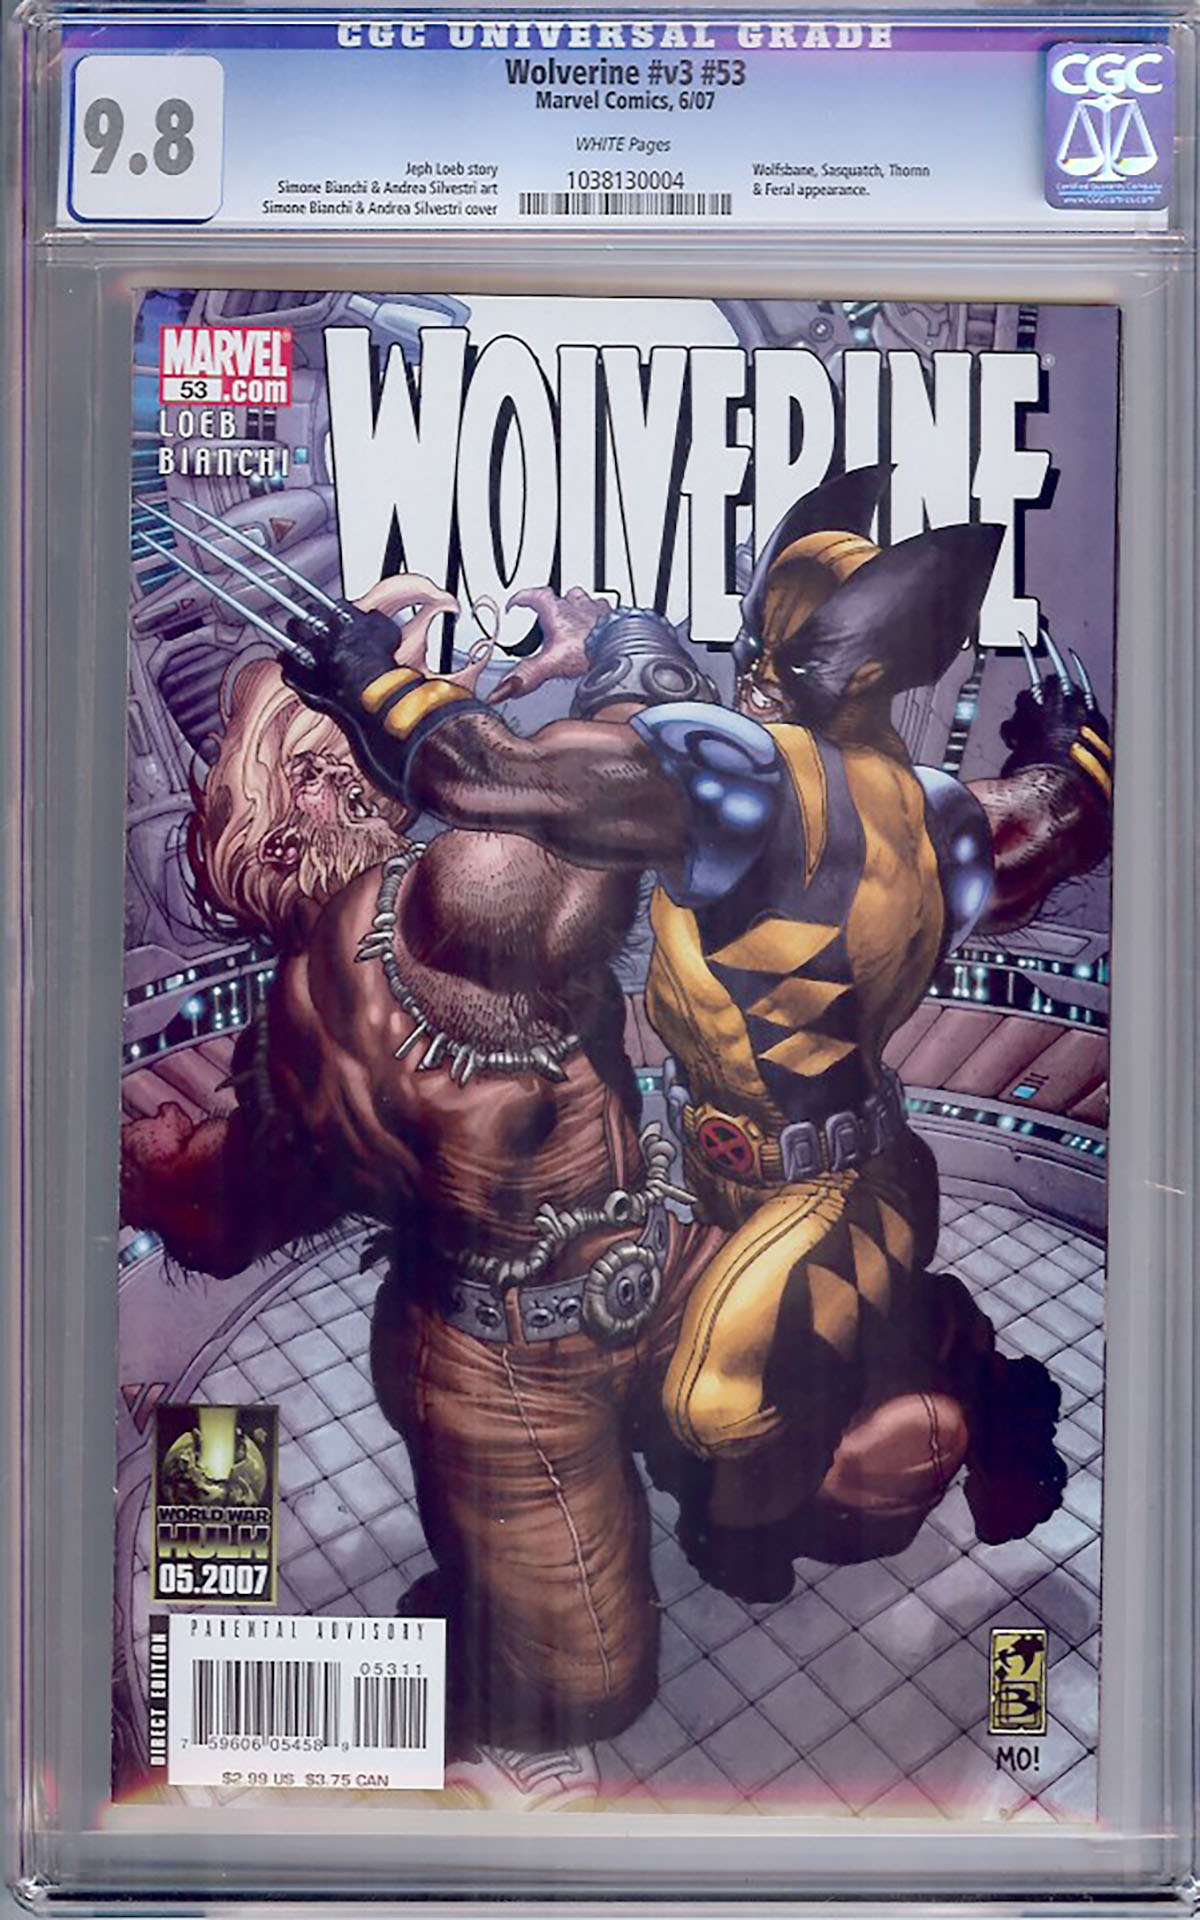 Wolverine Vol 3 #53 CGC 9.8 w